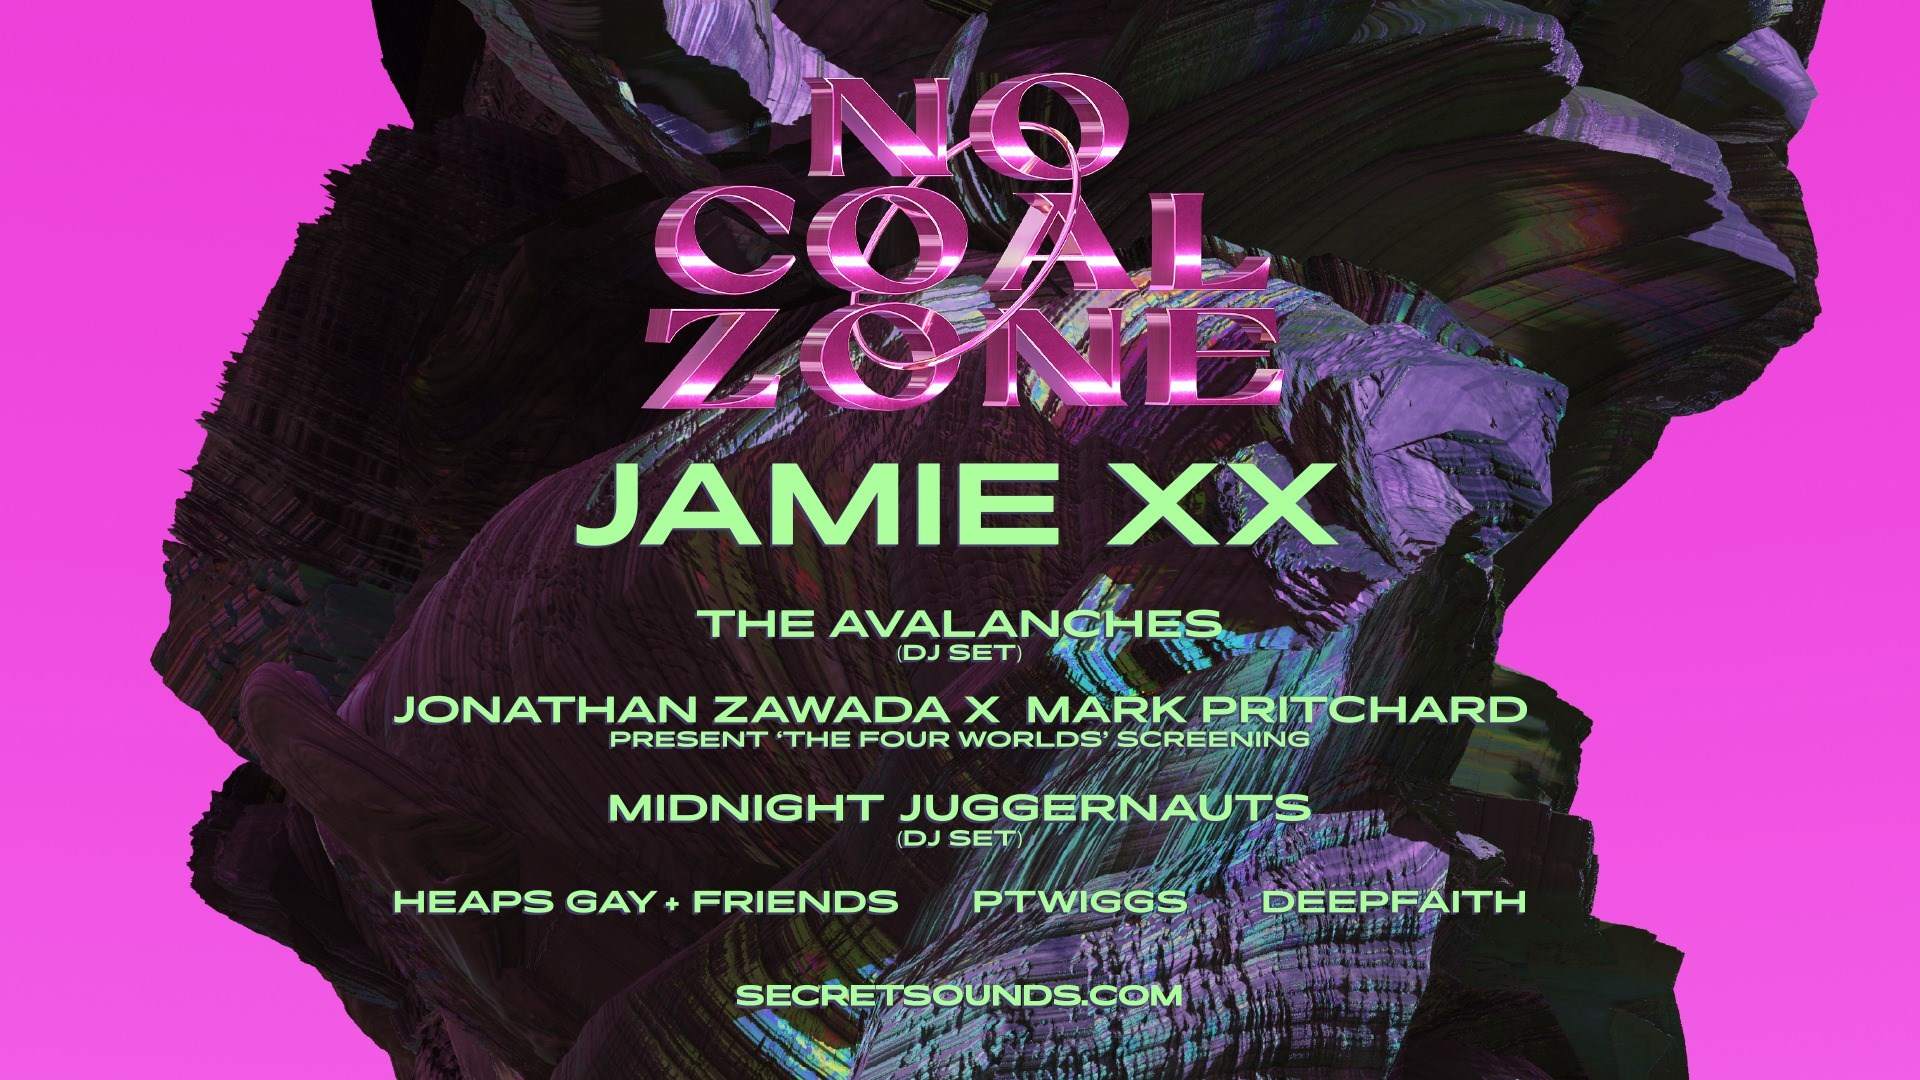 Jamie xx - No Coal Zone - Página frontal